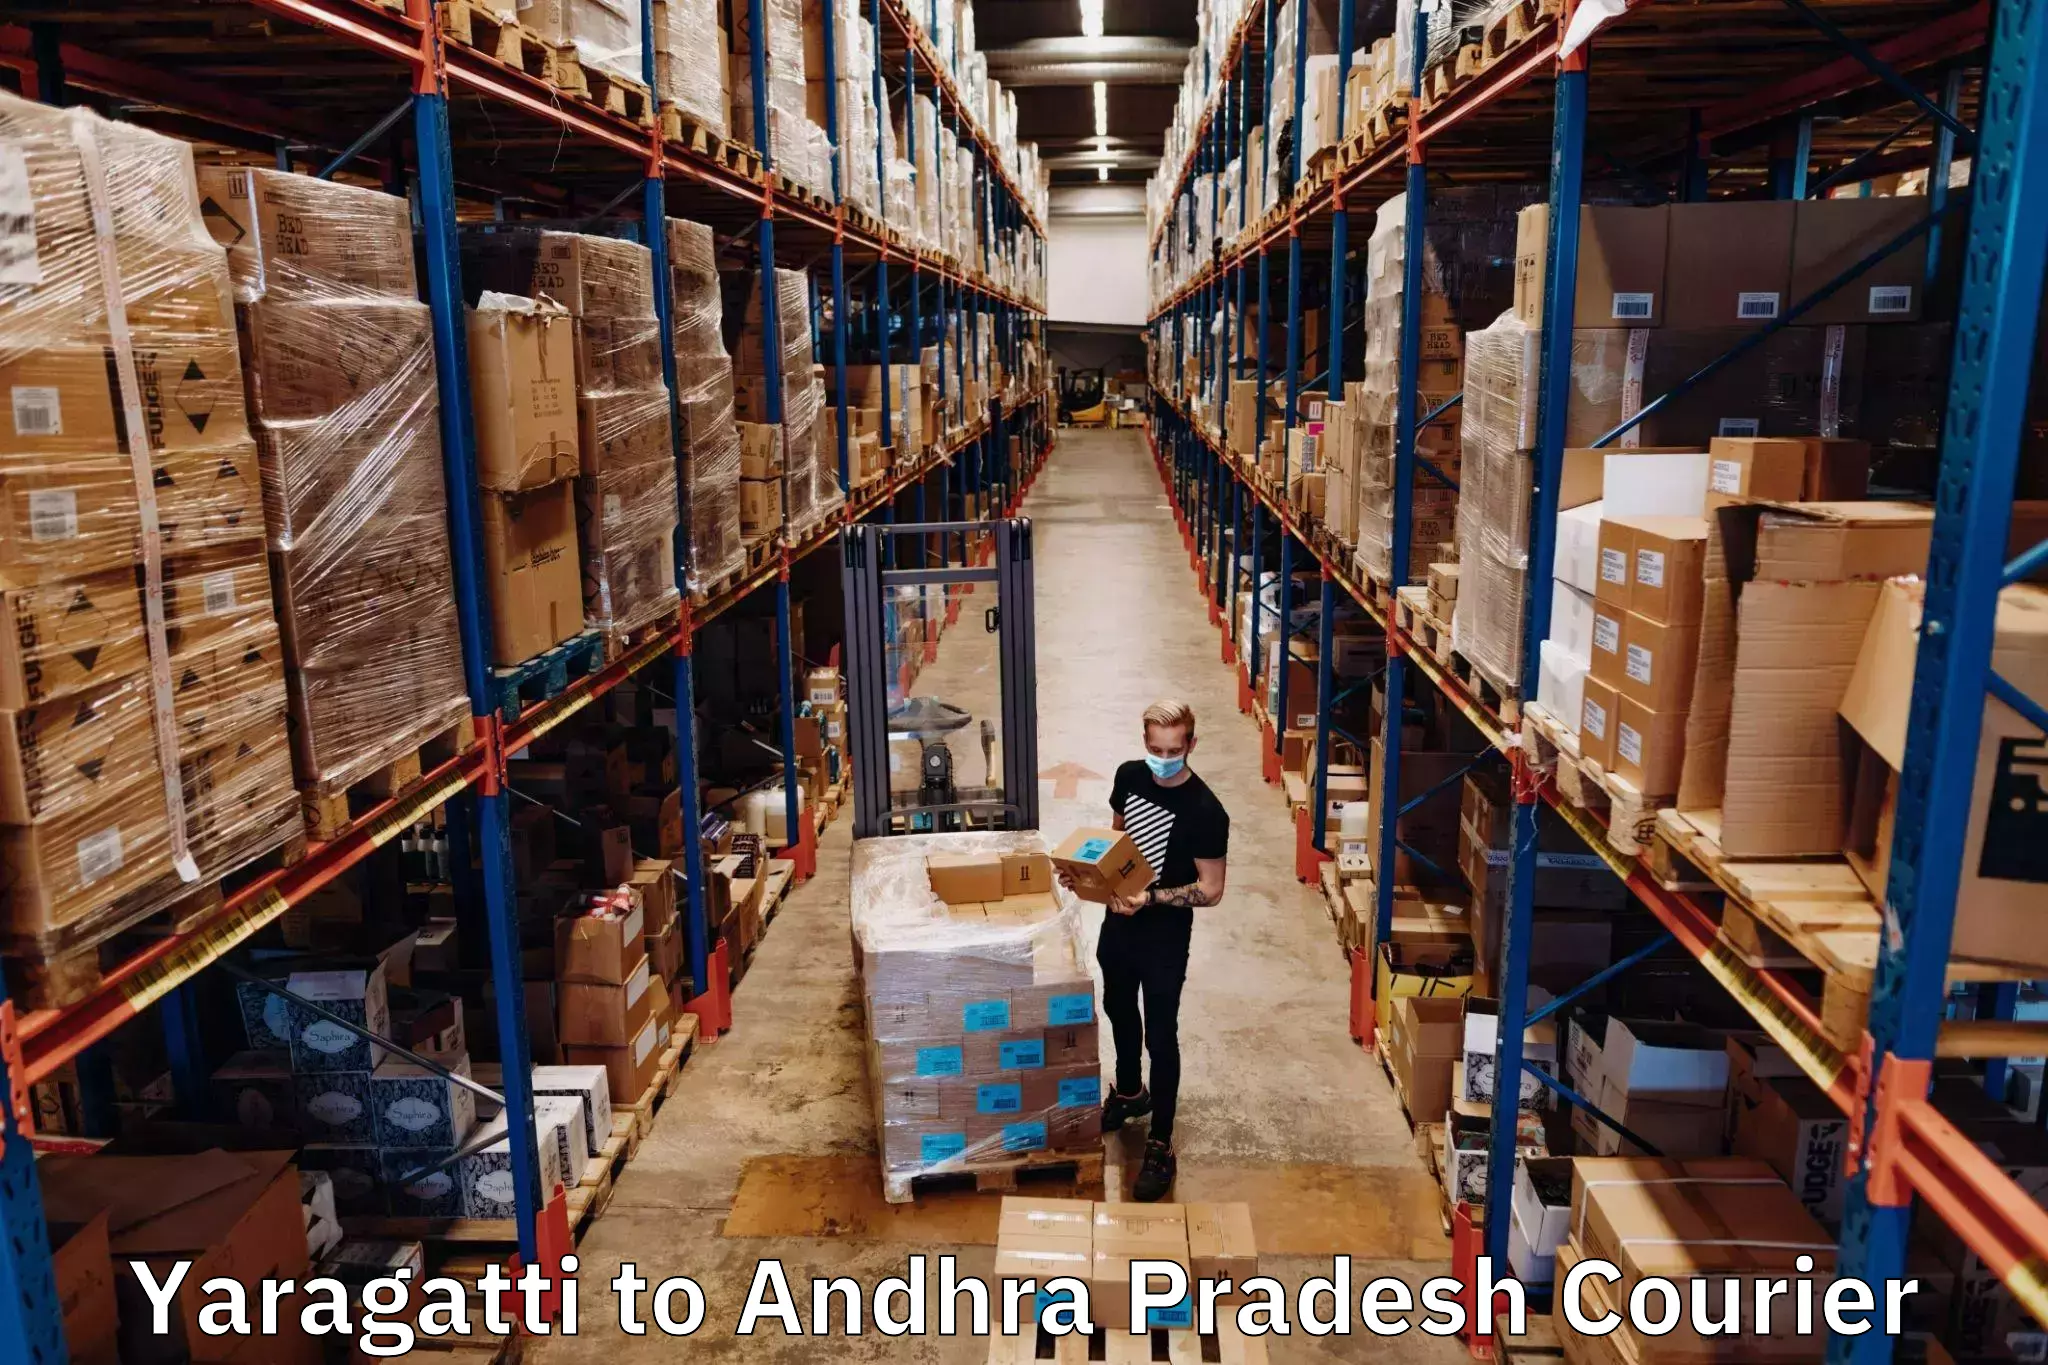 Next-generation courier services Yaragatti to Achampet Palnadu